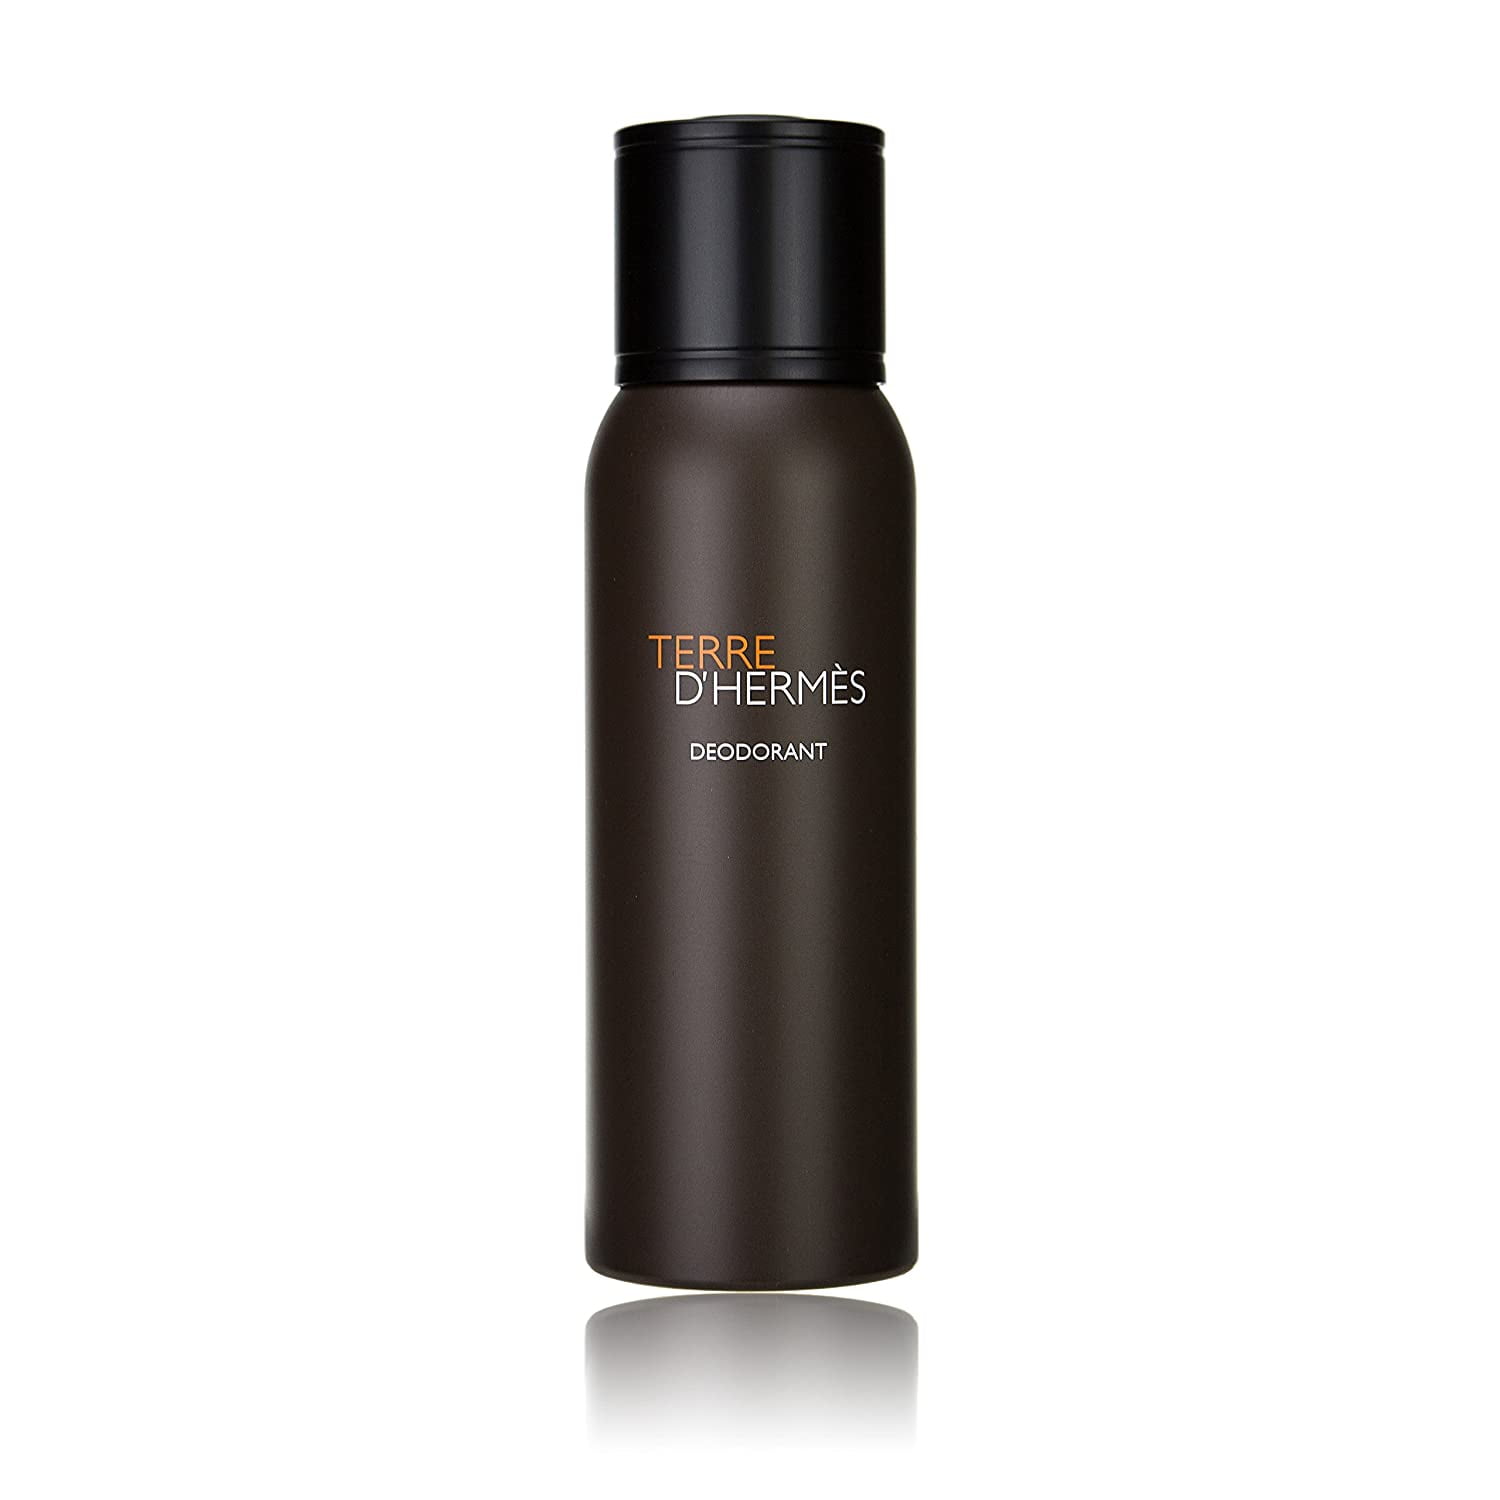 Spray D\' Hermes Oz Men, for Hermes Deodorant Terre 5